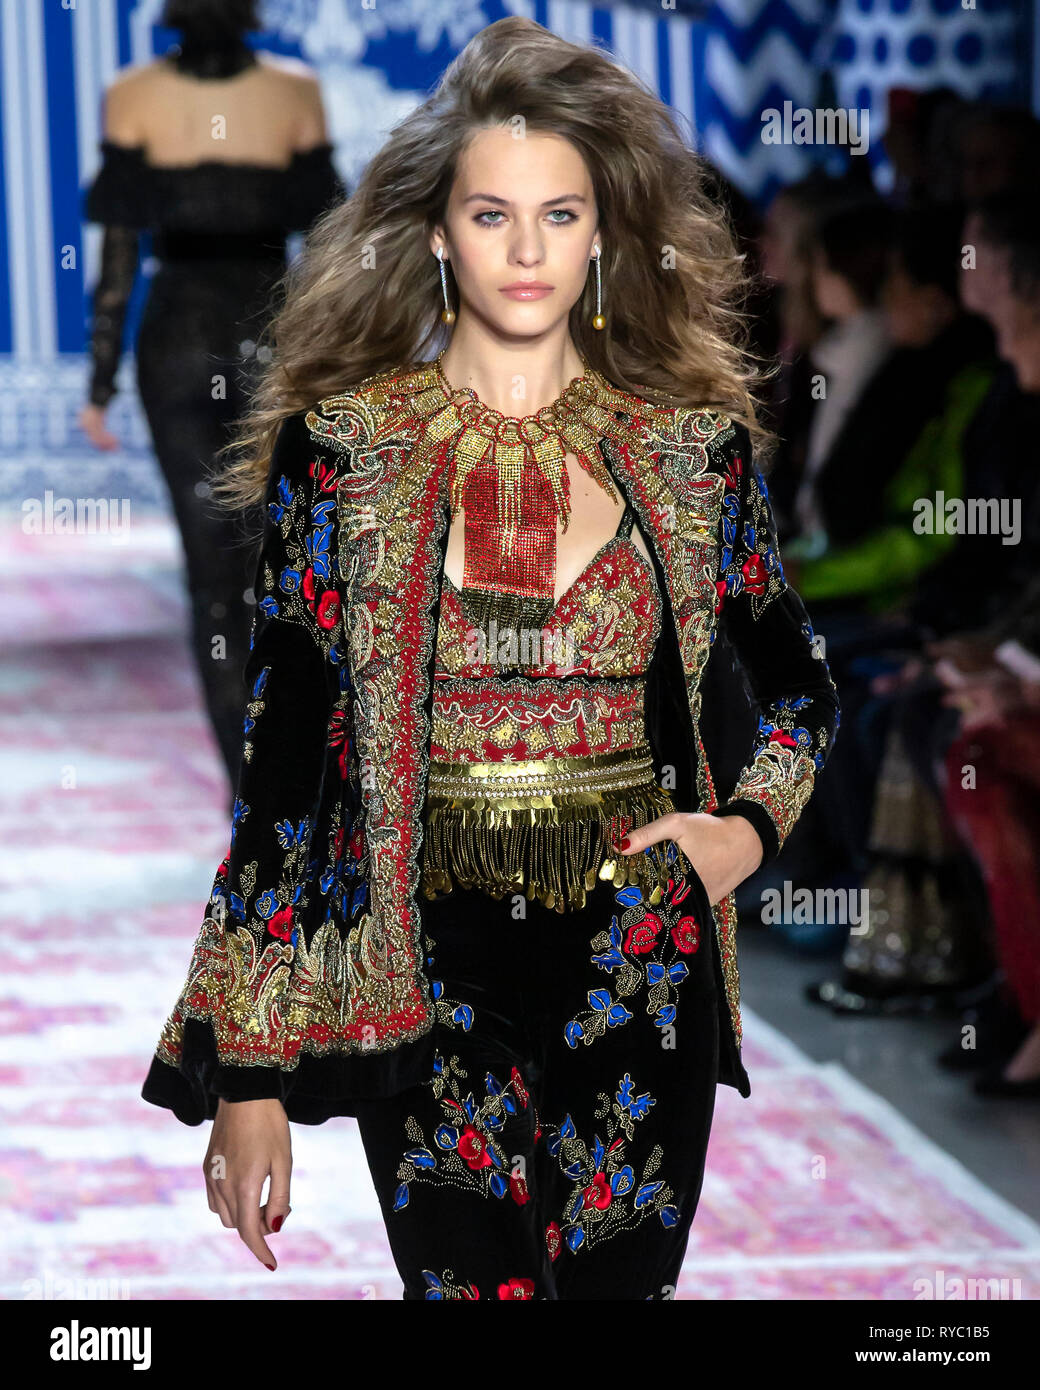 New York, New York - February 12 2019: Darya Kostenich walks the runway at Naeem Khan Fall Winter 2019 Fashion Show Stock Photo